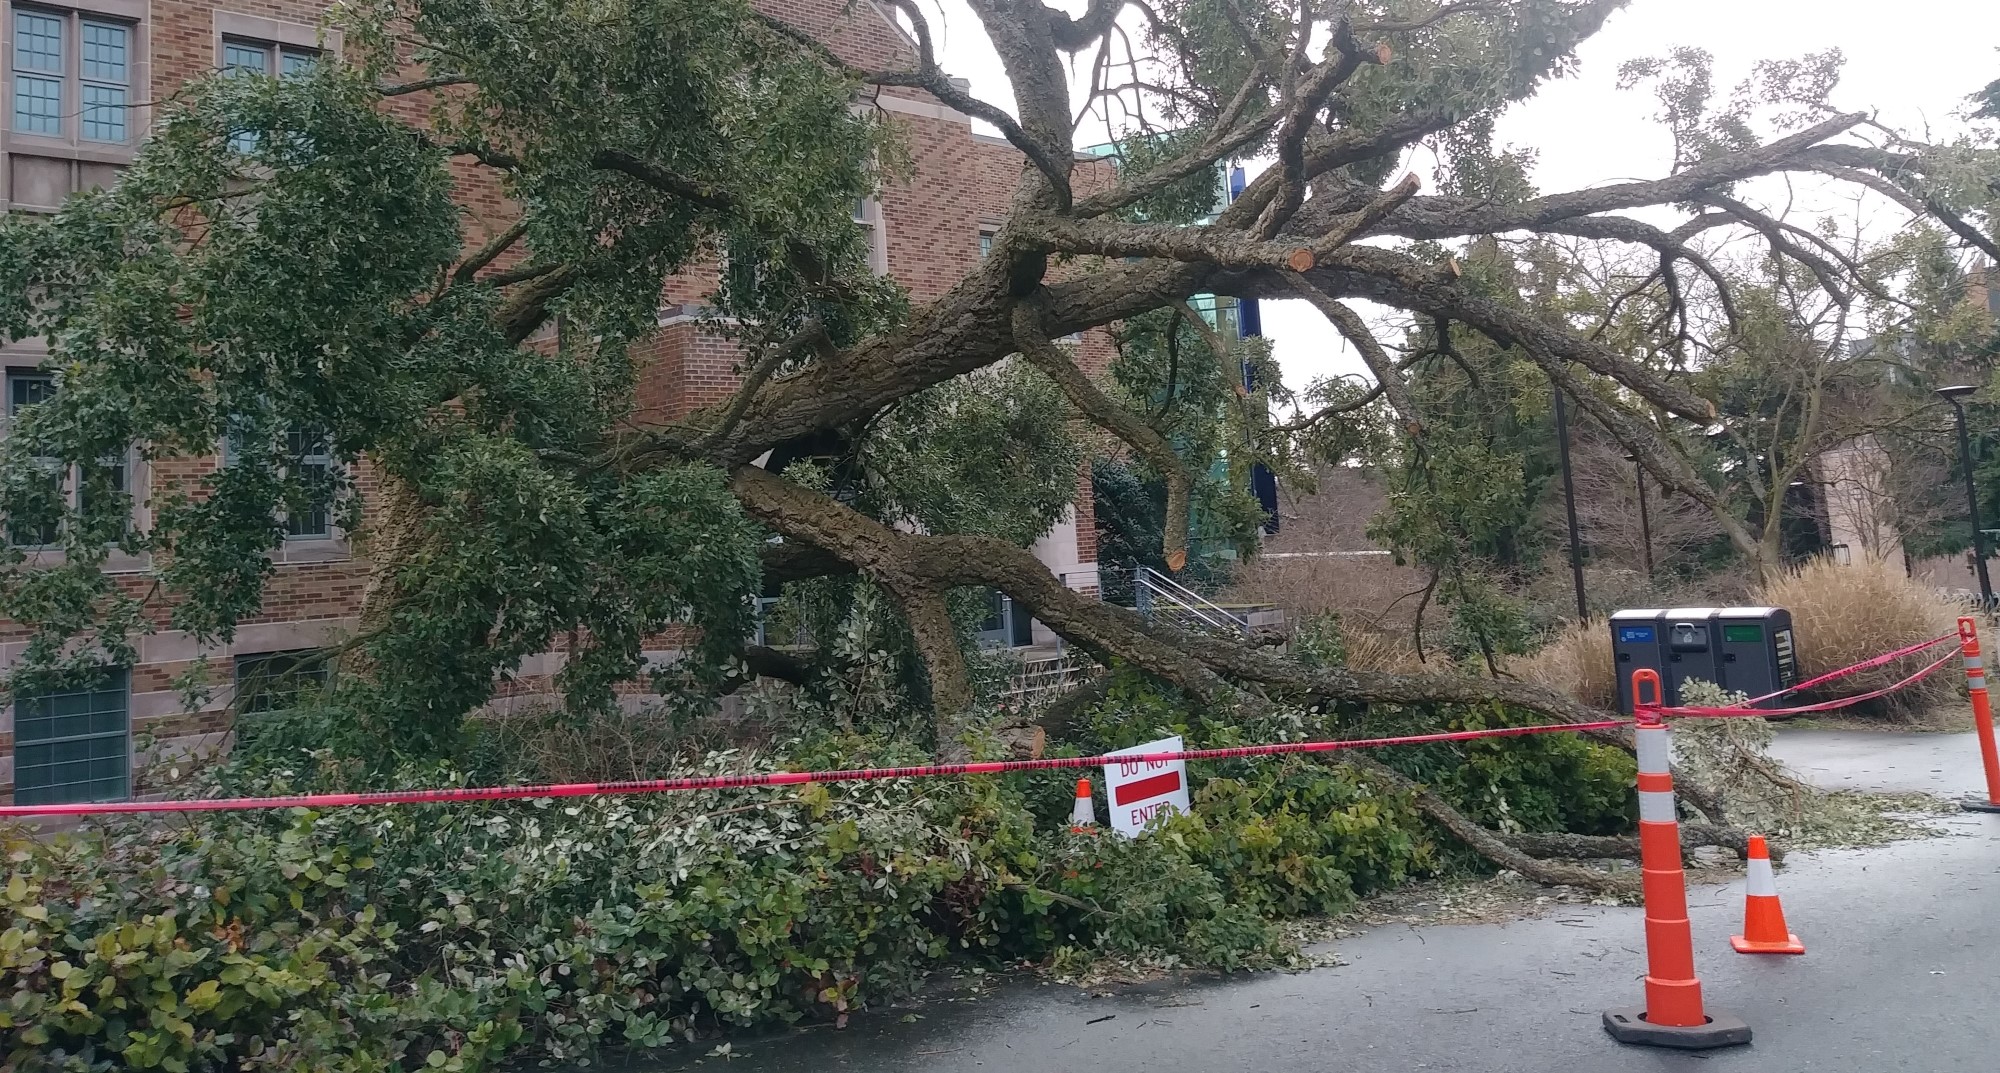 UW cork oak tree damaged in snow storm 